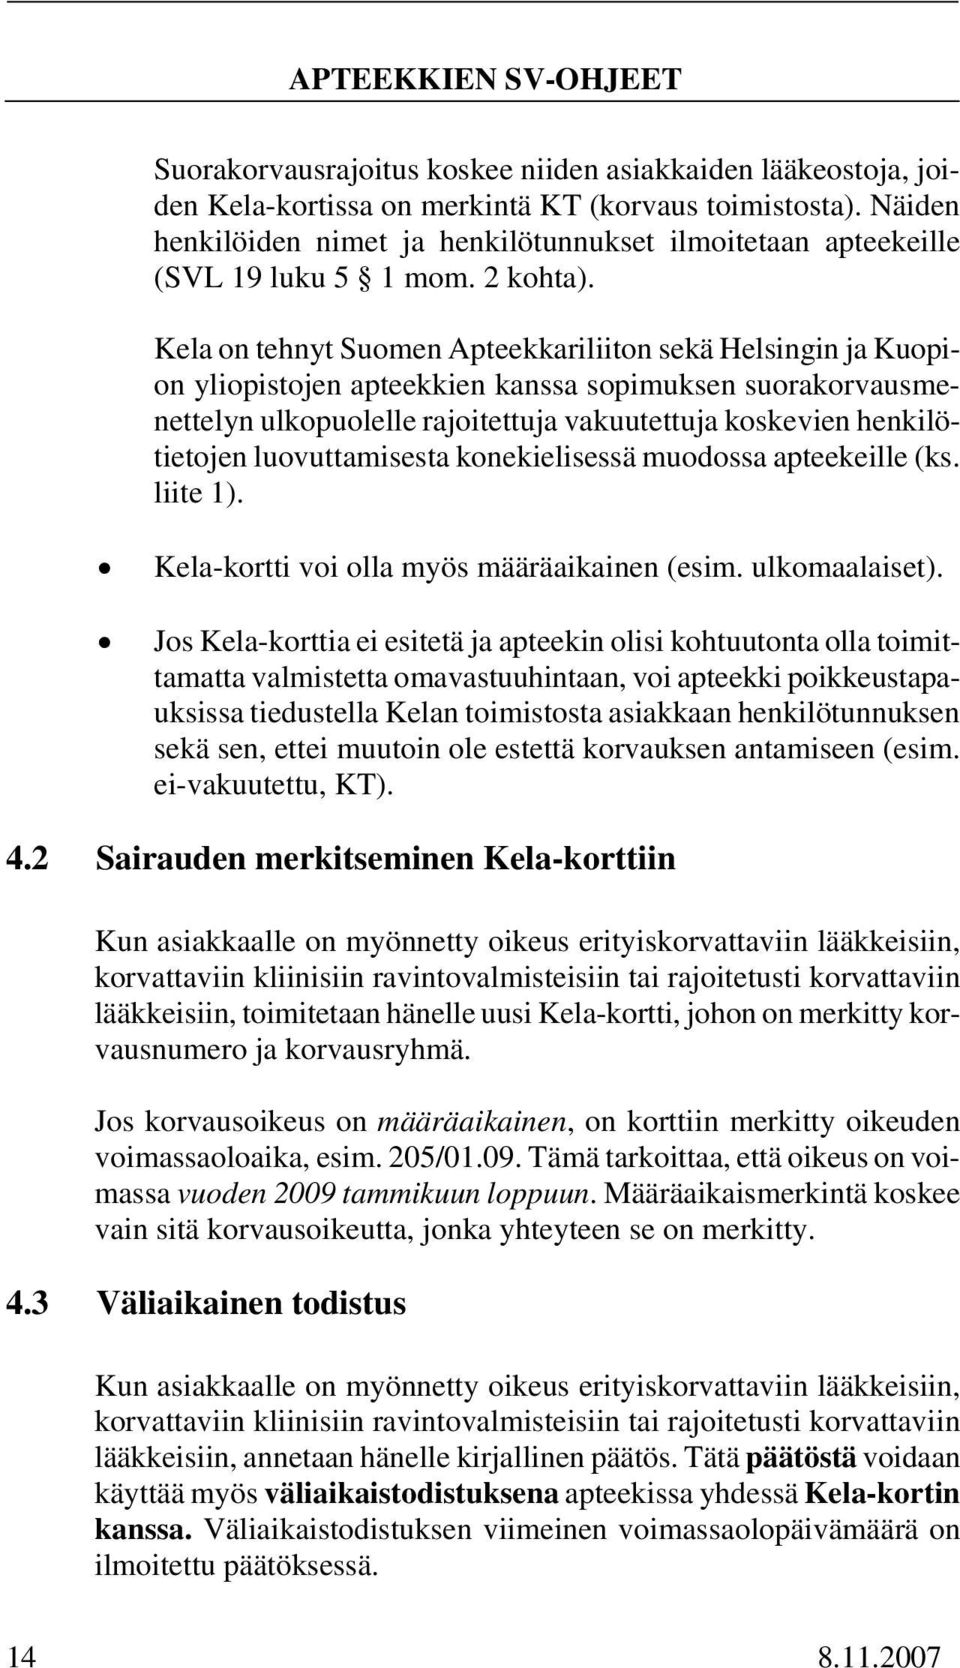 Kela on tehnyt Suomen Apteekkariliiton sekä Helsingin ja Kuopion yliopistojen apteekkien kanssa sopimuksen suorakorvausmenettelyn ulkopuolelle rajoitettuja vakuutettuja koskevien henkilötietojen